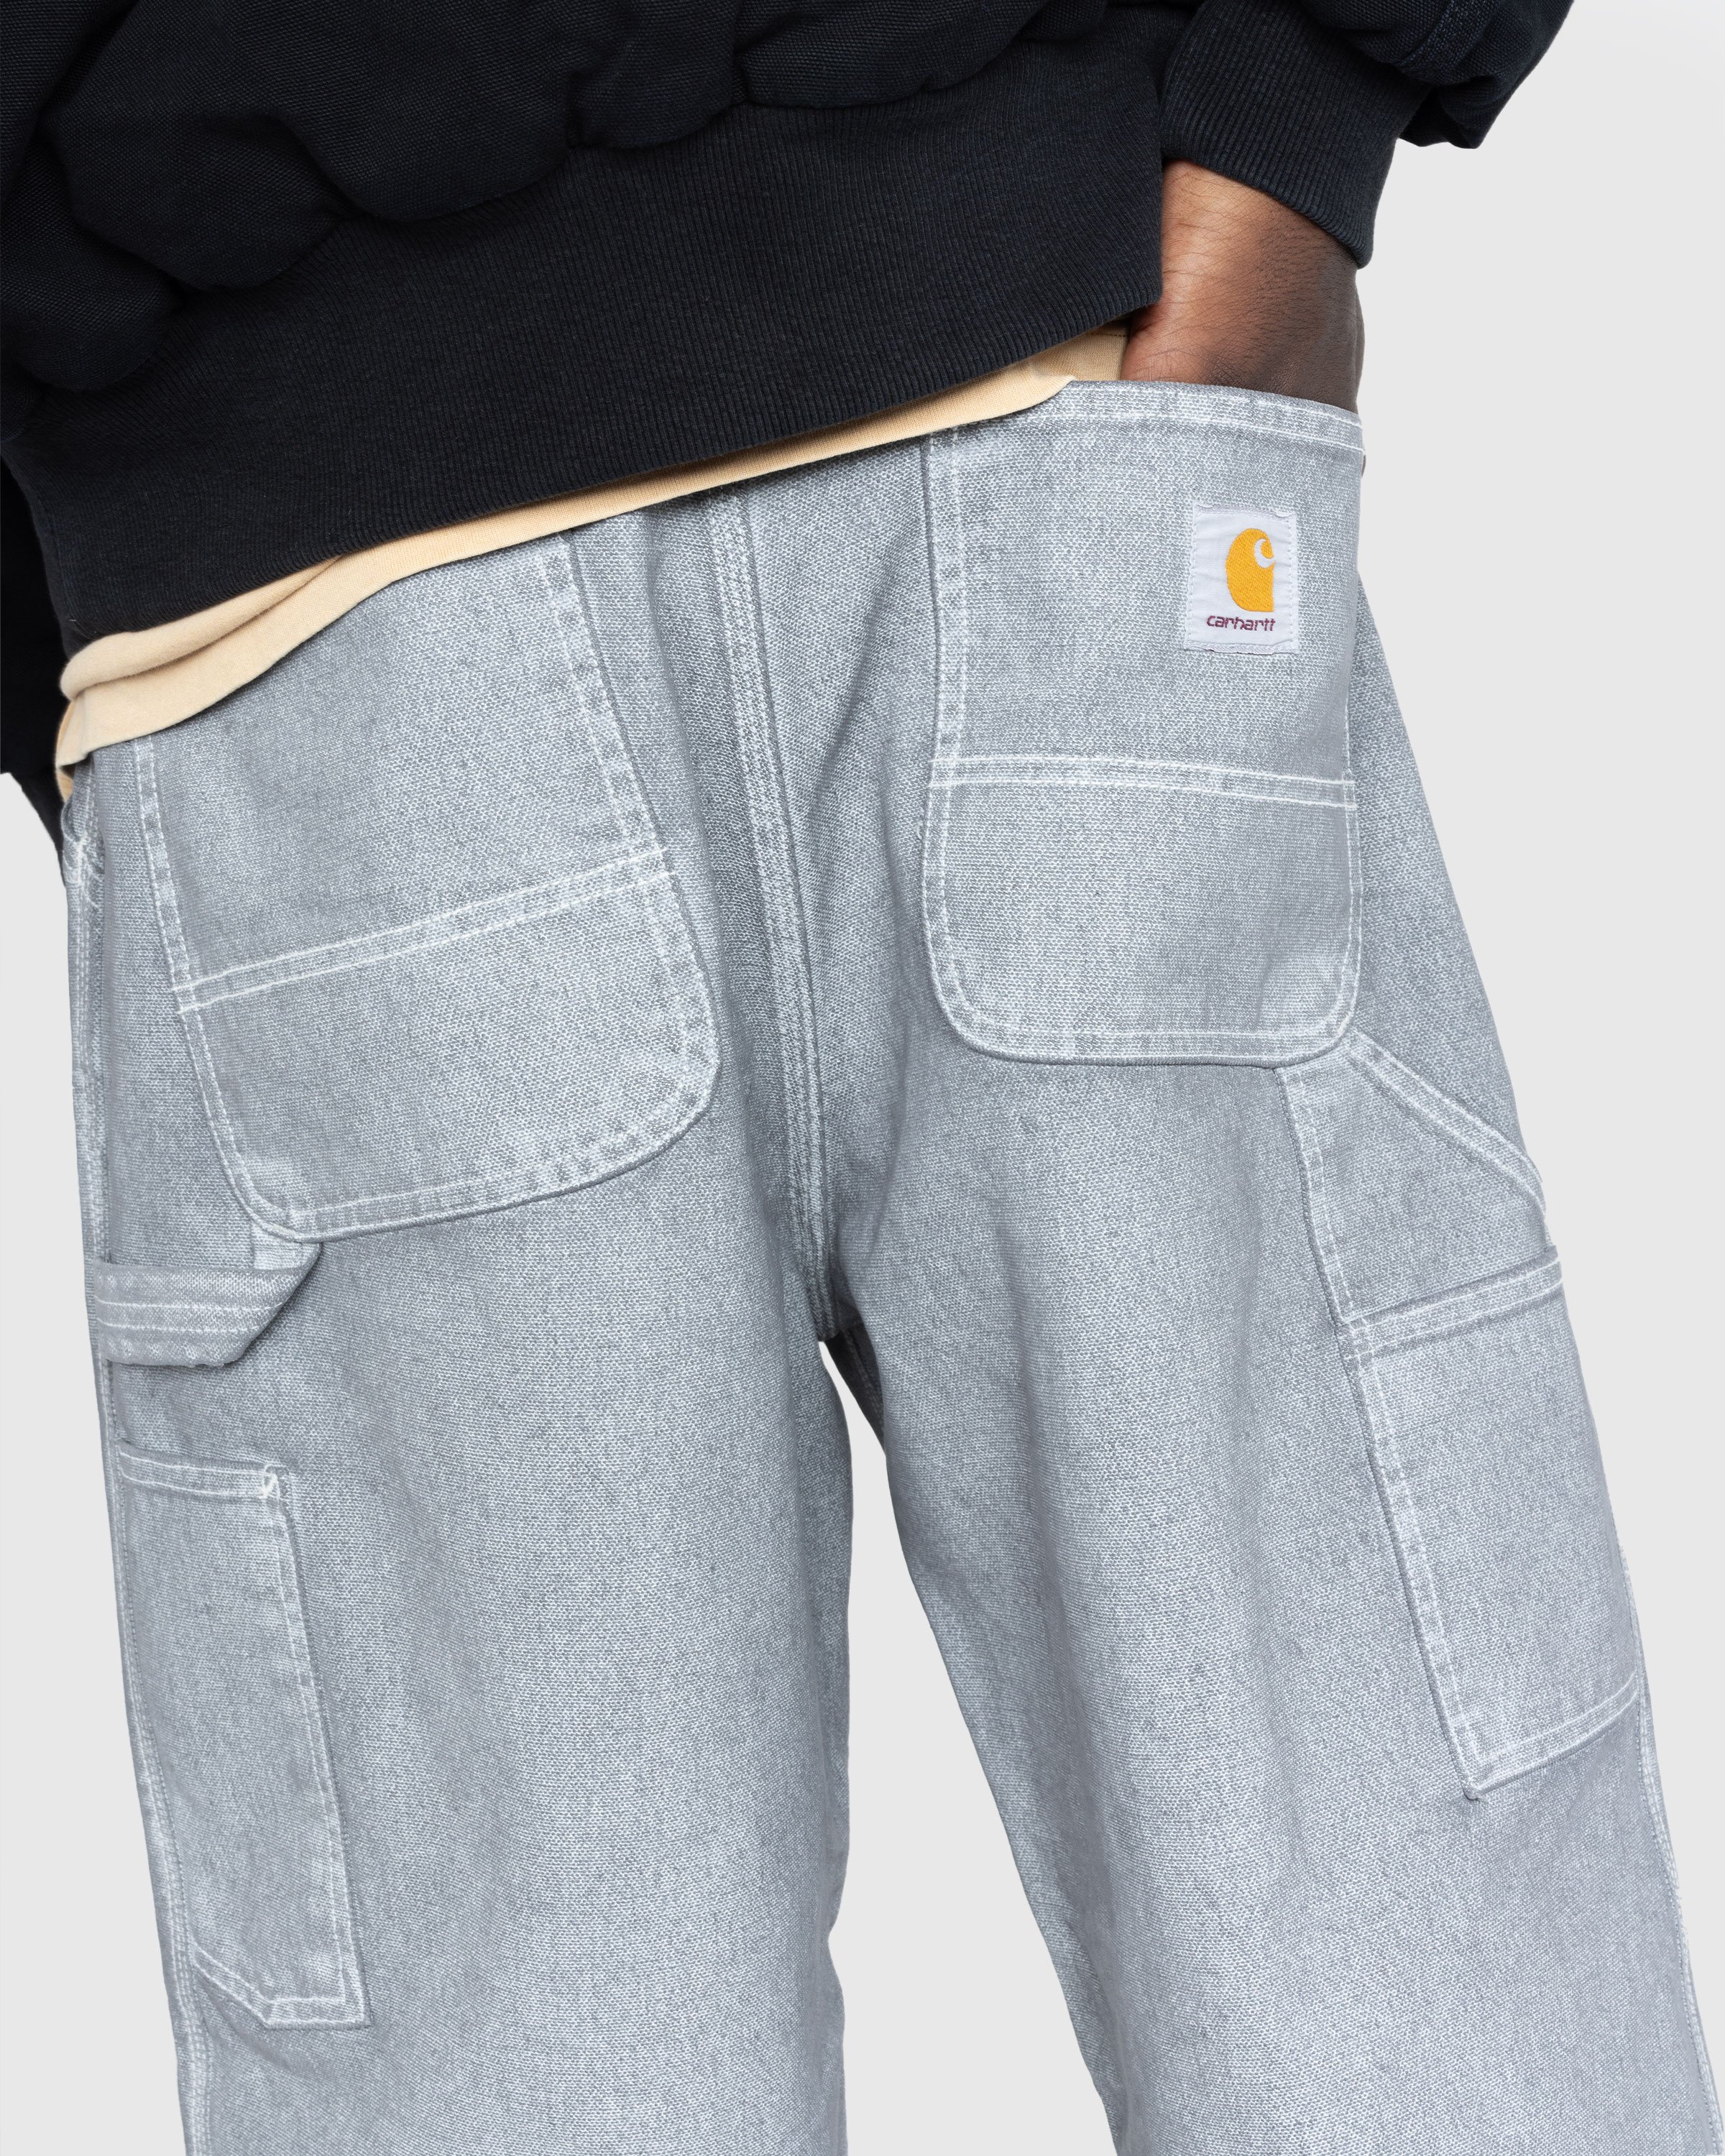 Carhartt WIP - OG Single Knee Pant Wax/Blacksmith/Stone Washed - Clothing - Grey - Image 4